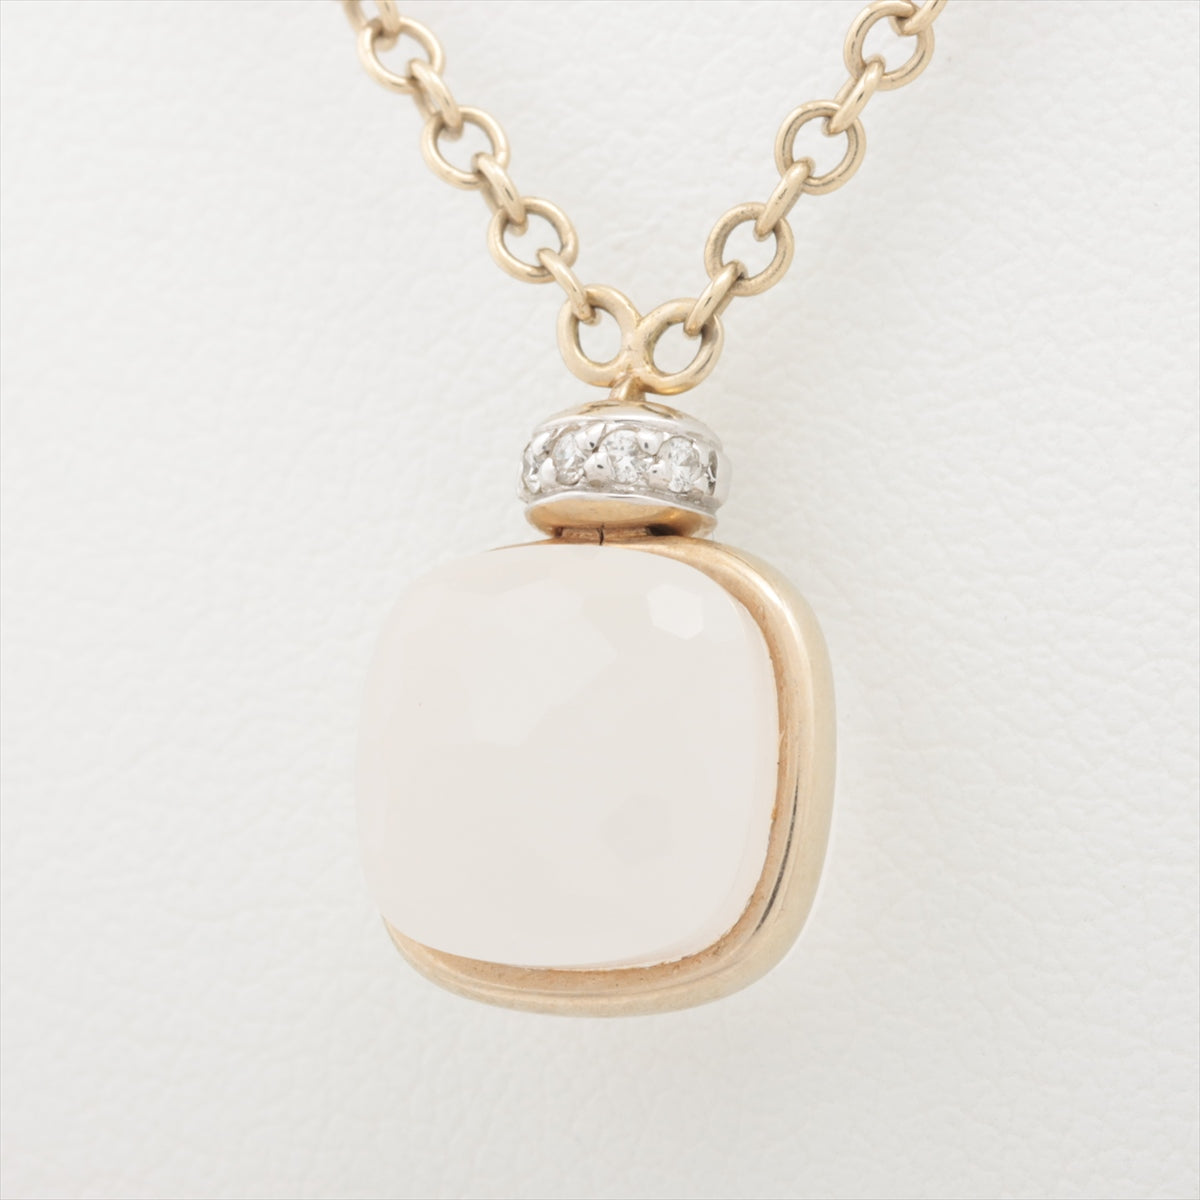 Pomerate Nude Pucci Milkquart Diamond Necklace 750 (WG) 5.8g PCC2030_UWWHR_B0QLT